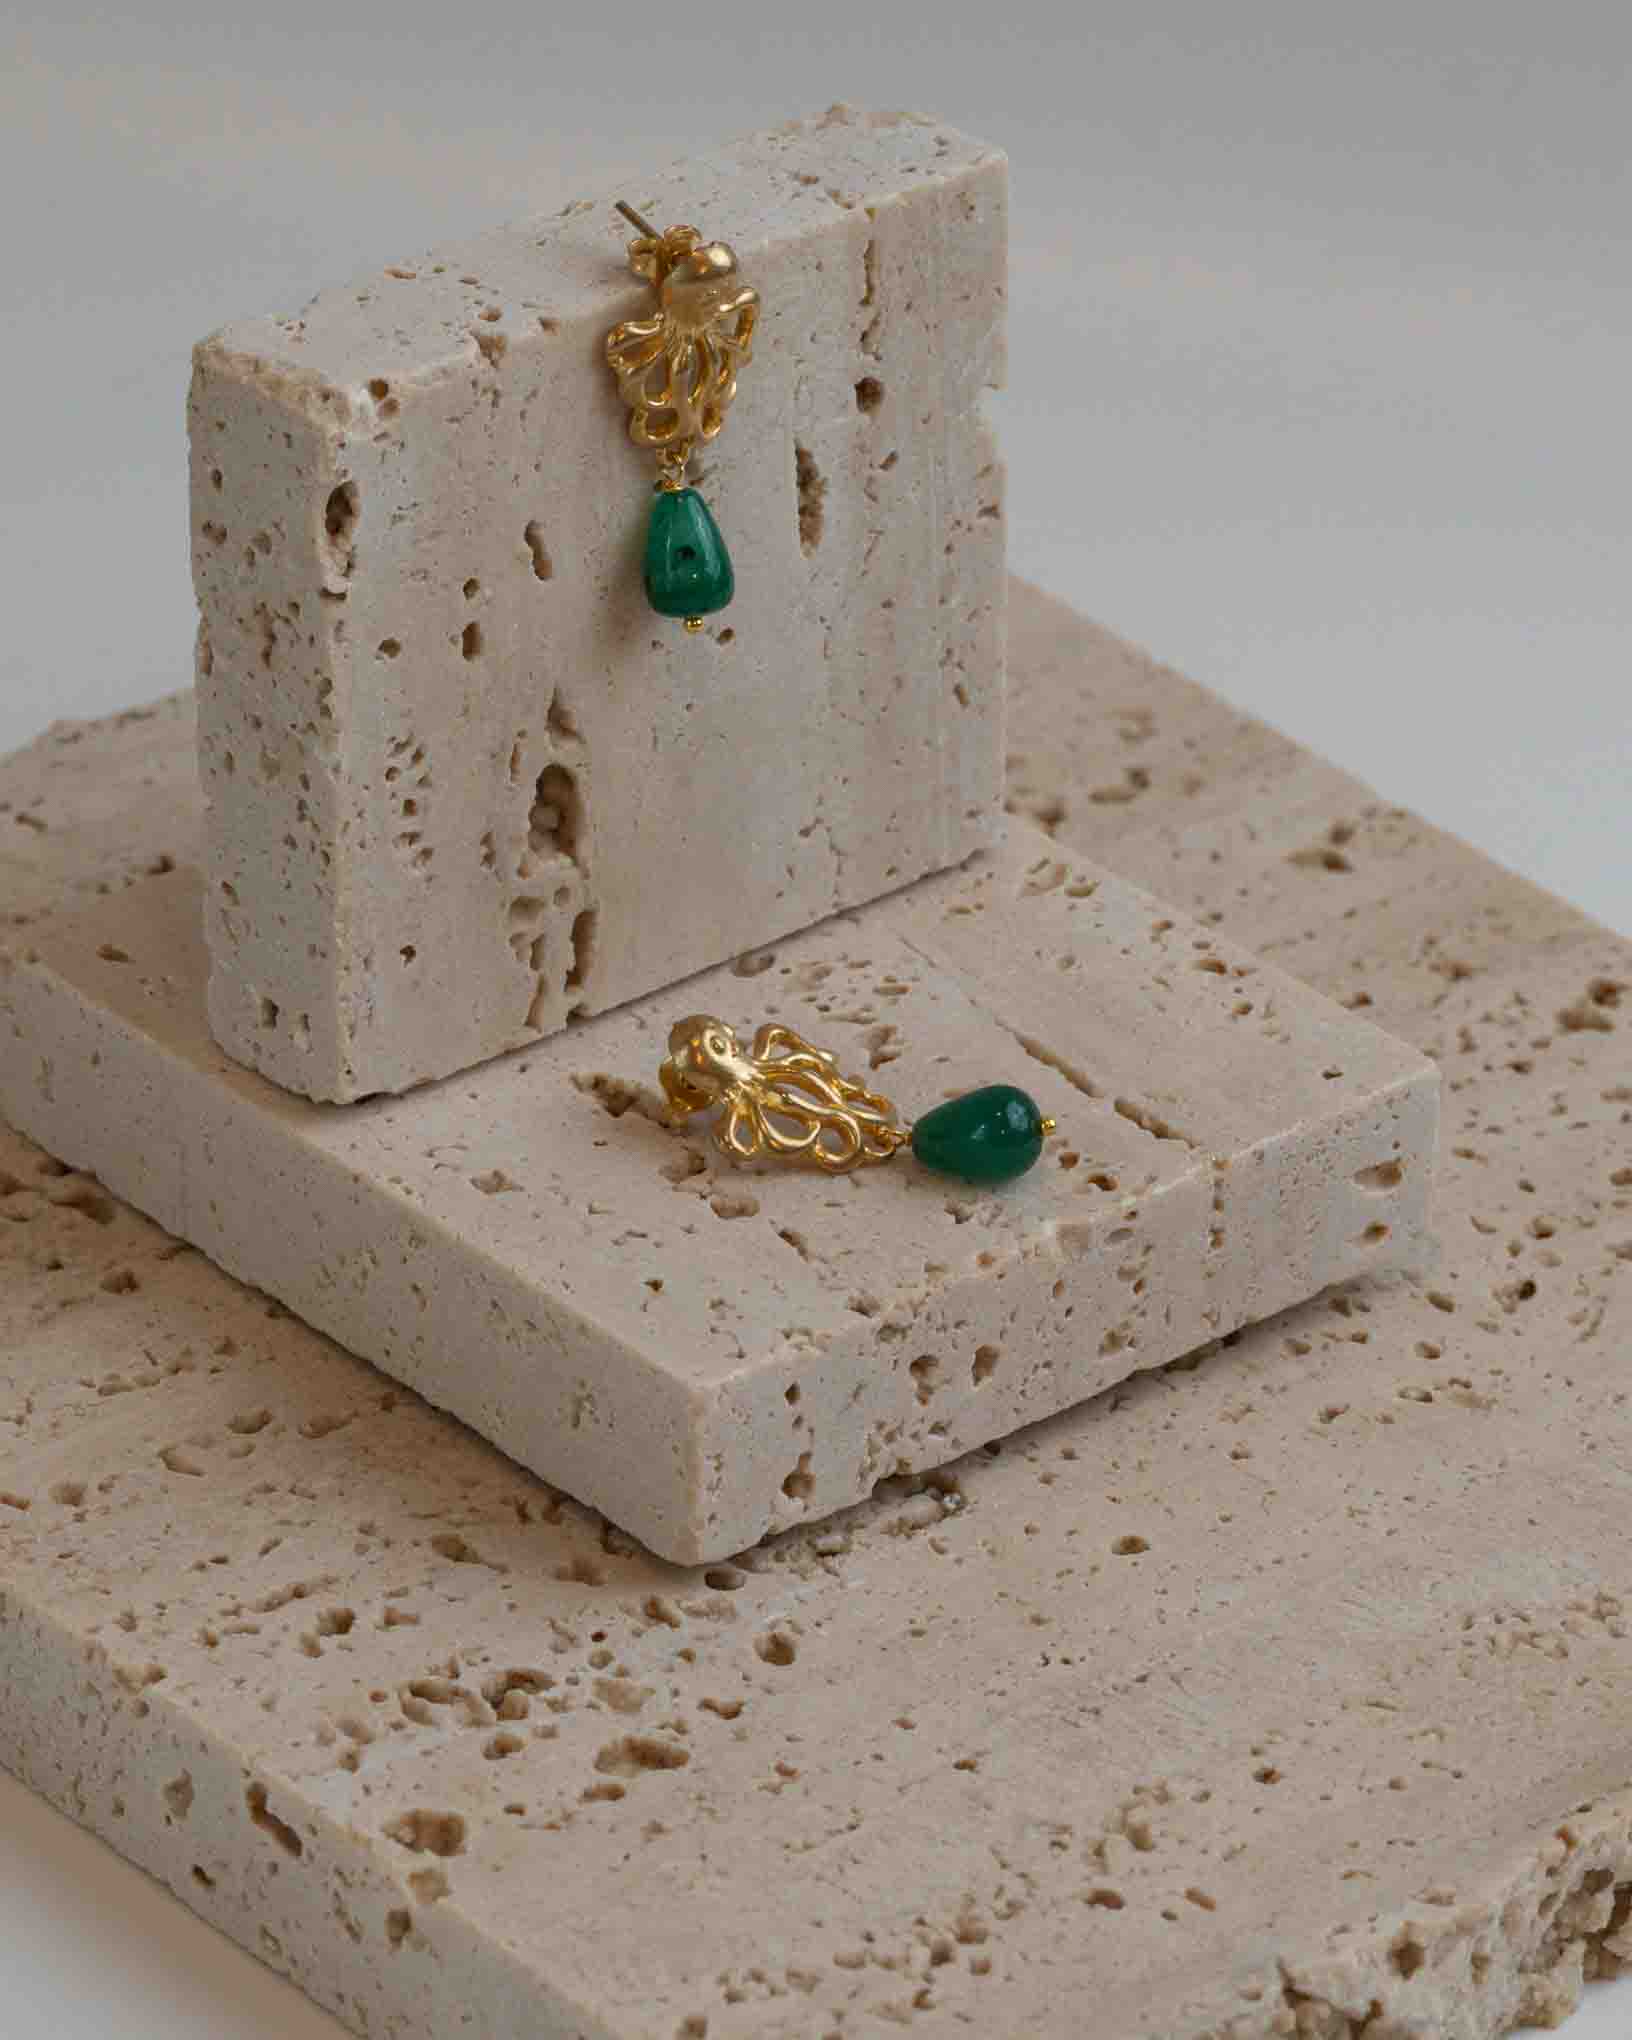 Ohrring Polipetto aus der Kollektion I Classici von Donna Rachele Jewelry